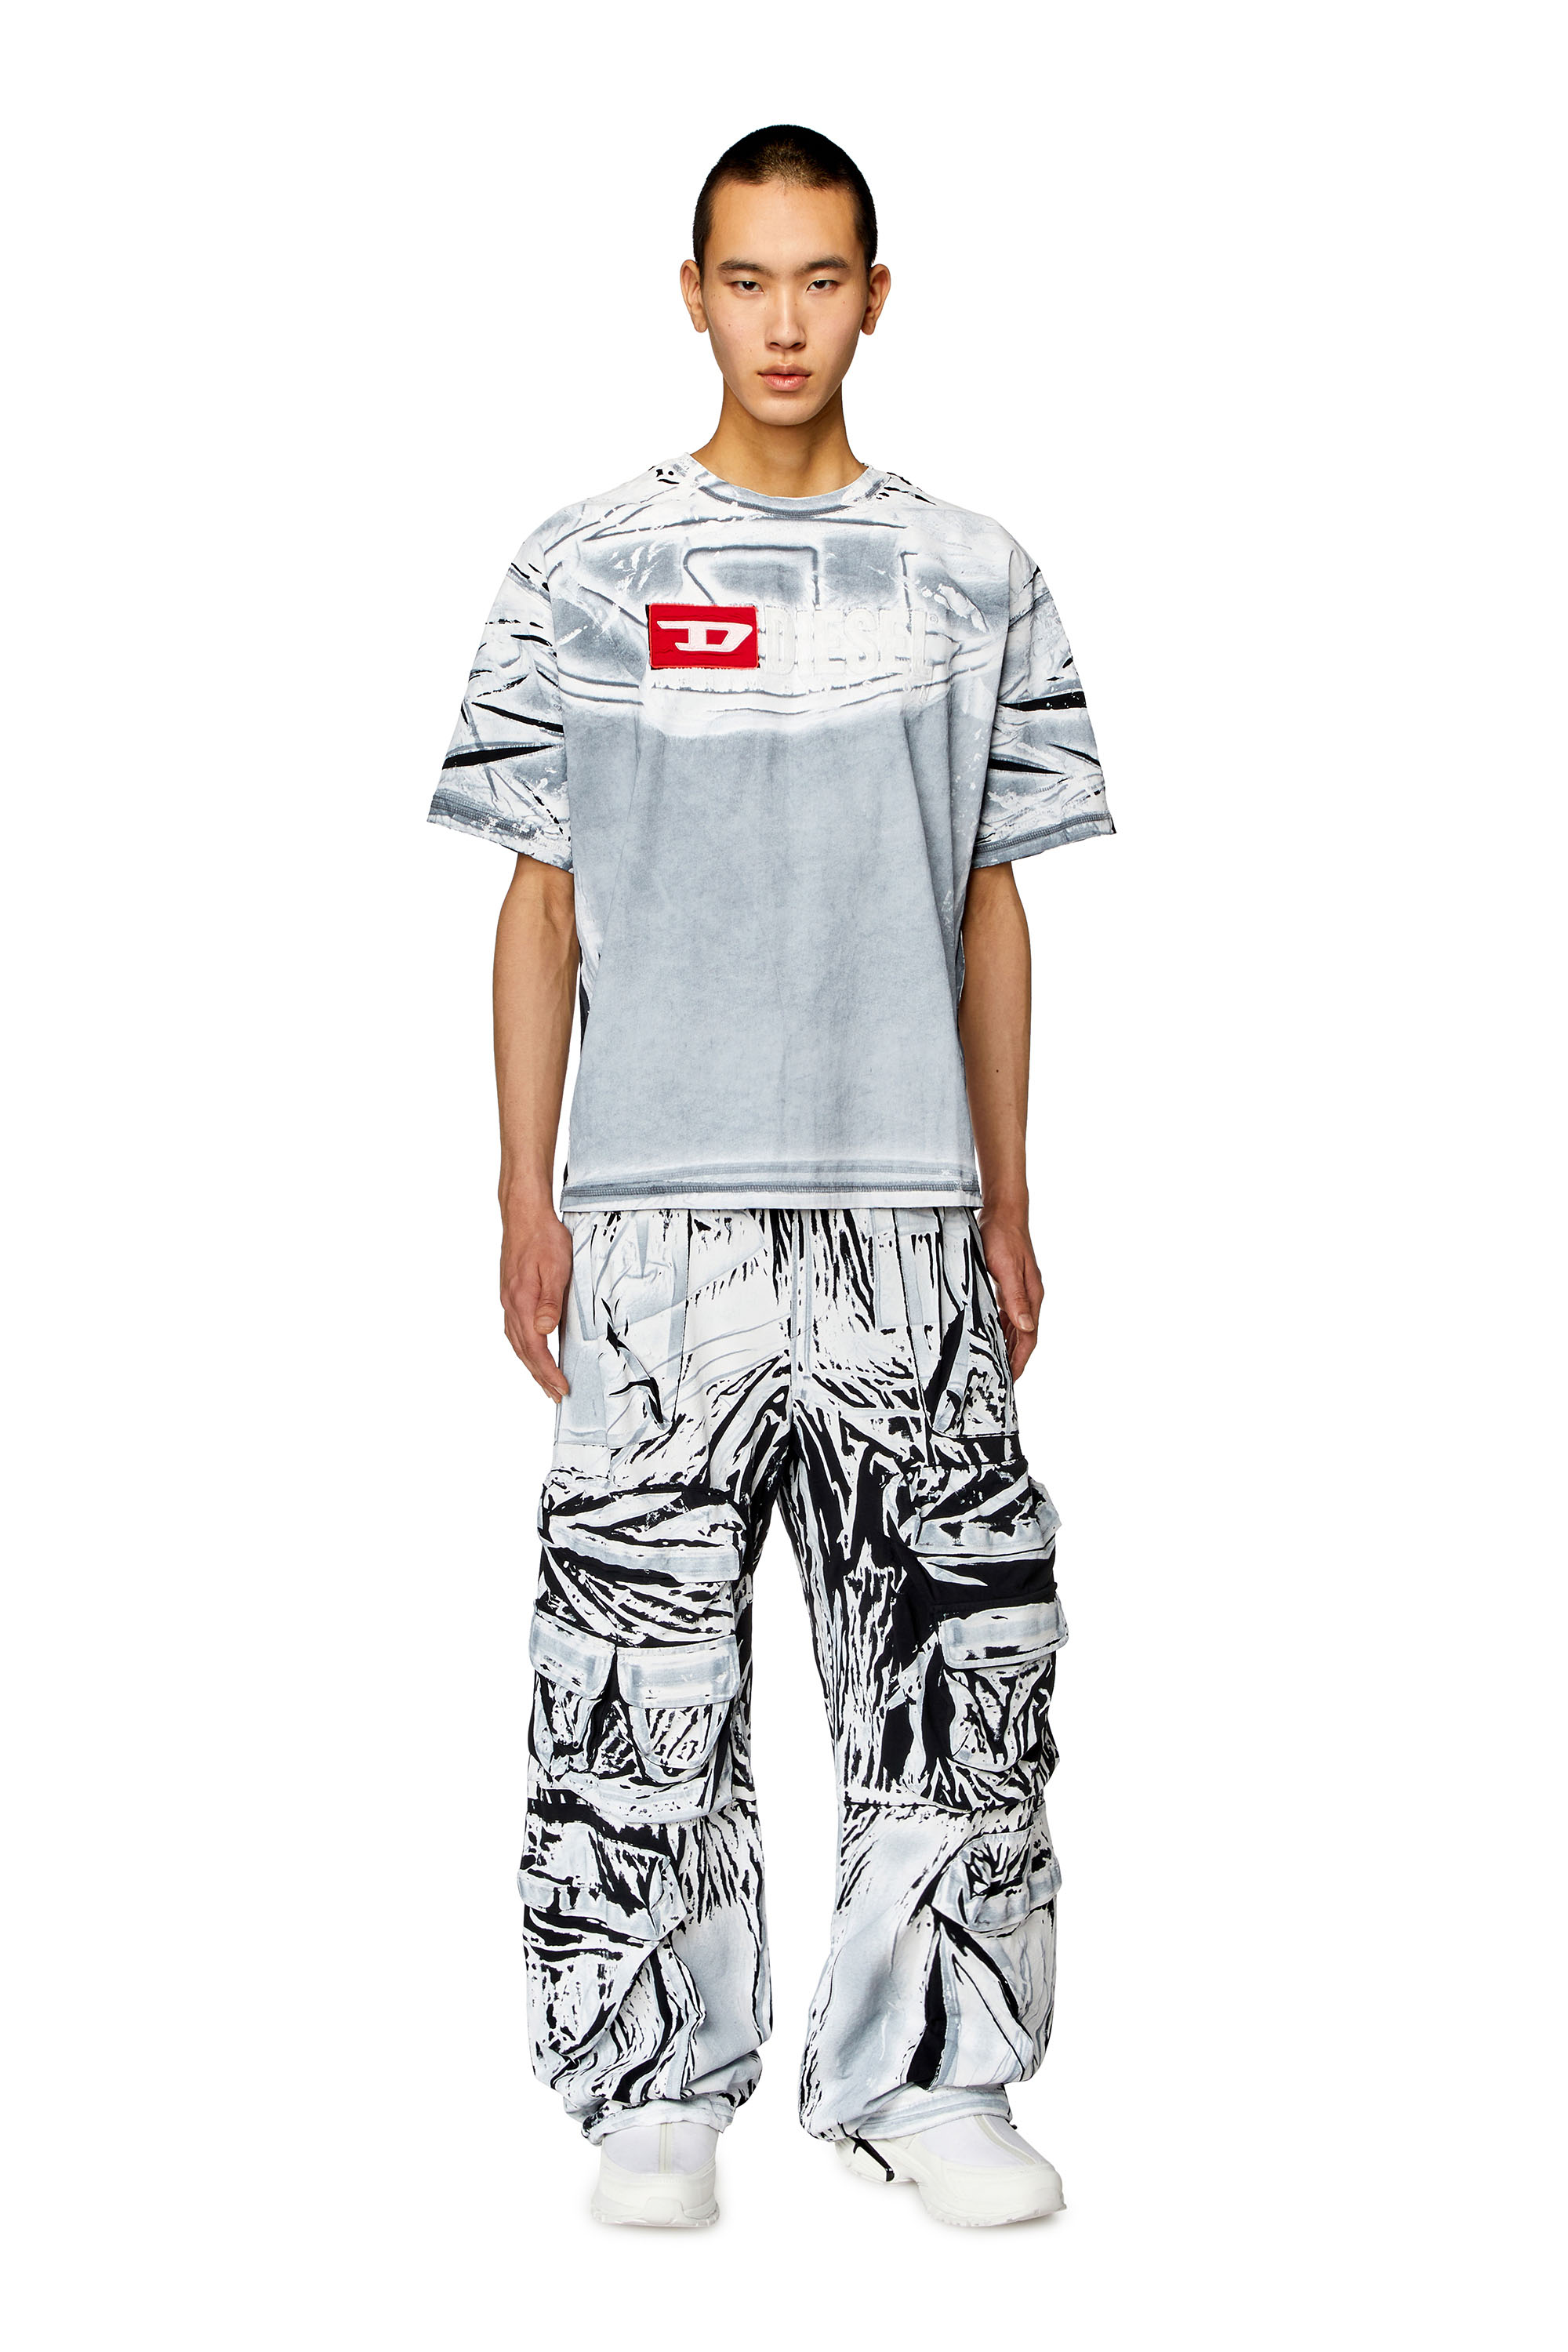 Diesel - T-OX, Homme T-shirt avec imprimé effet craie in Polychrome - Image 3